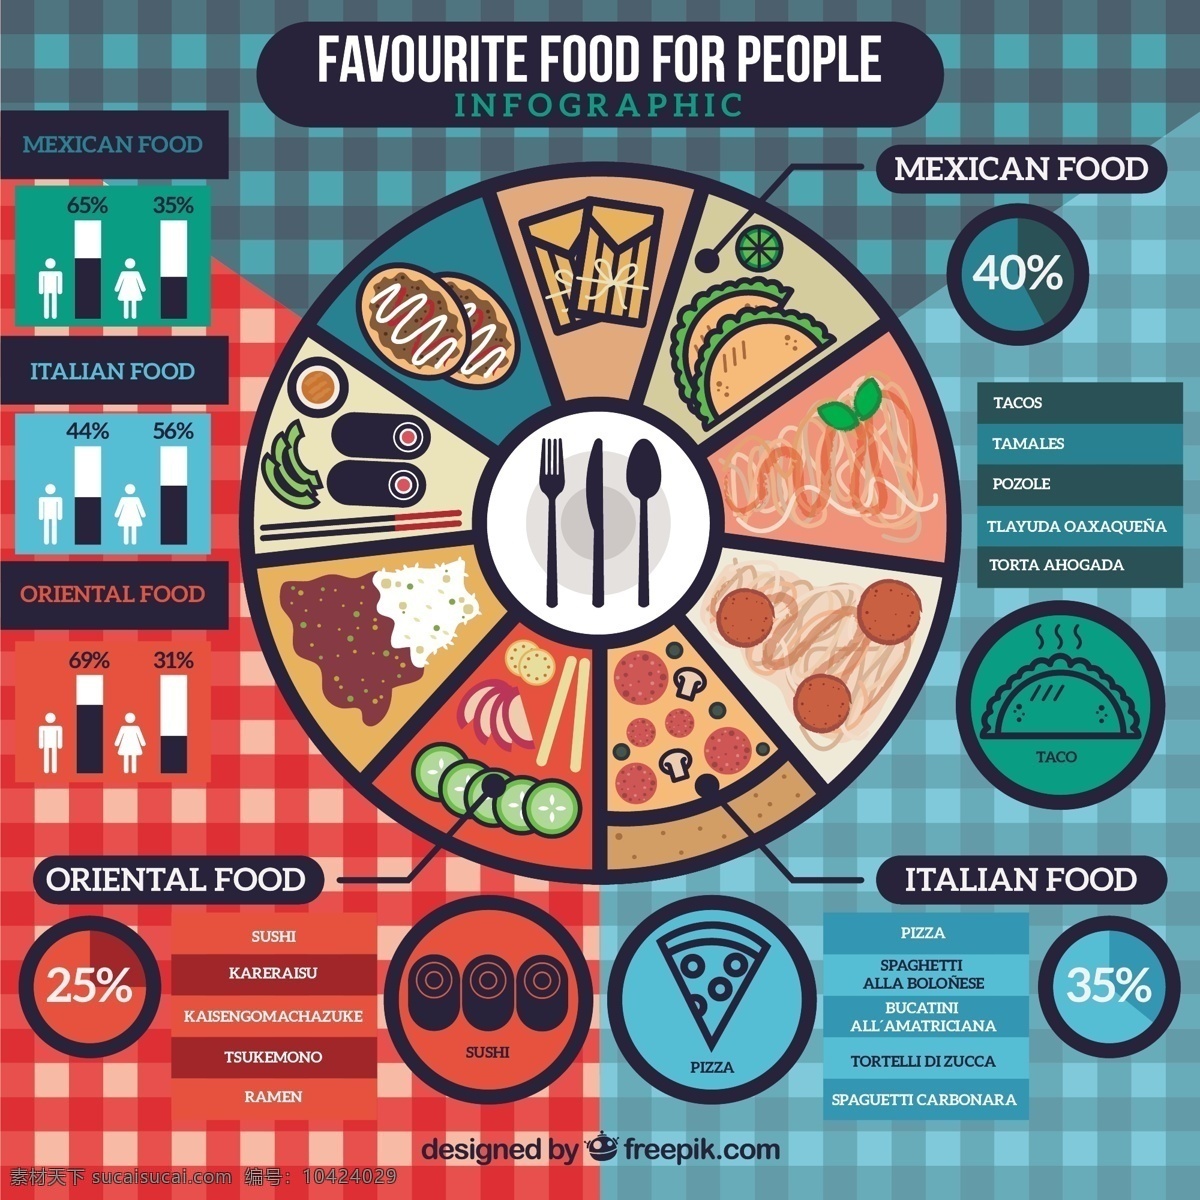 人们 infography 最 喜欢 食物 图表 人 菜单 手 餐厅 披萨 蛋糕 家居 厨房 面包房 手绘 时间表 蔬菜 图形 烹饪 有机 寿司 墨西哥 青色 天蓝色